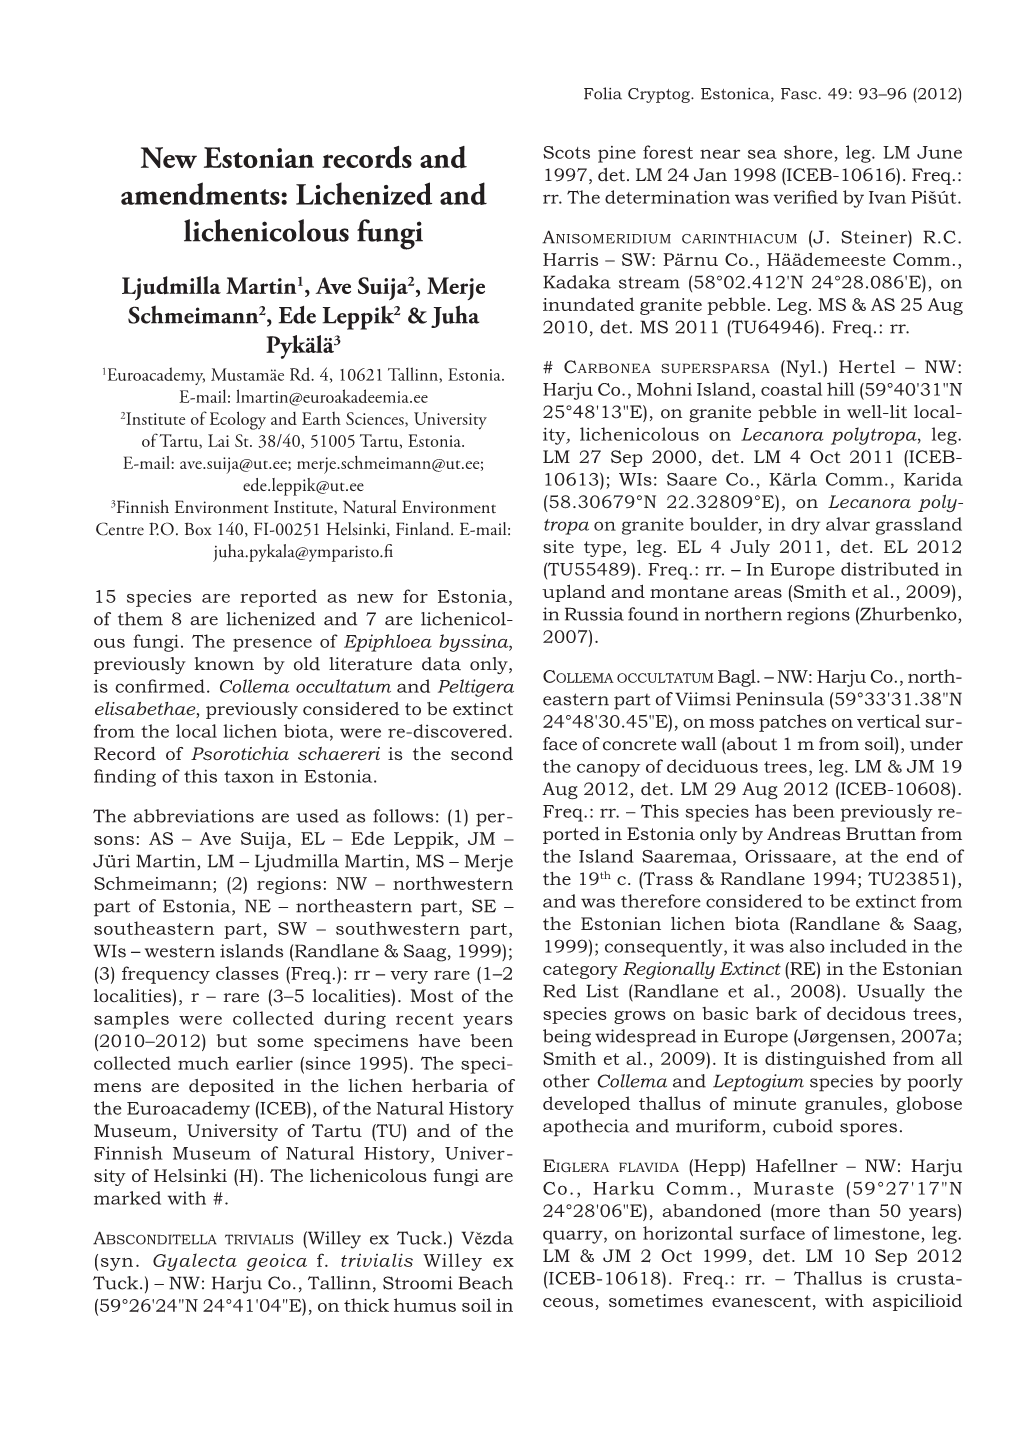 New Estonian Records and Amendments: Lichenized and Lichenicolous Fungi